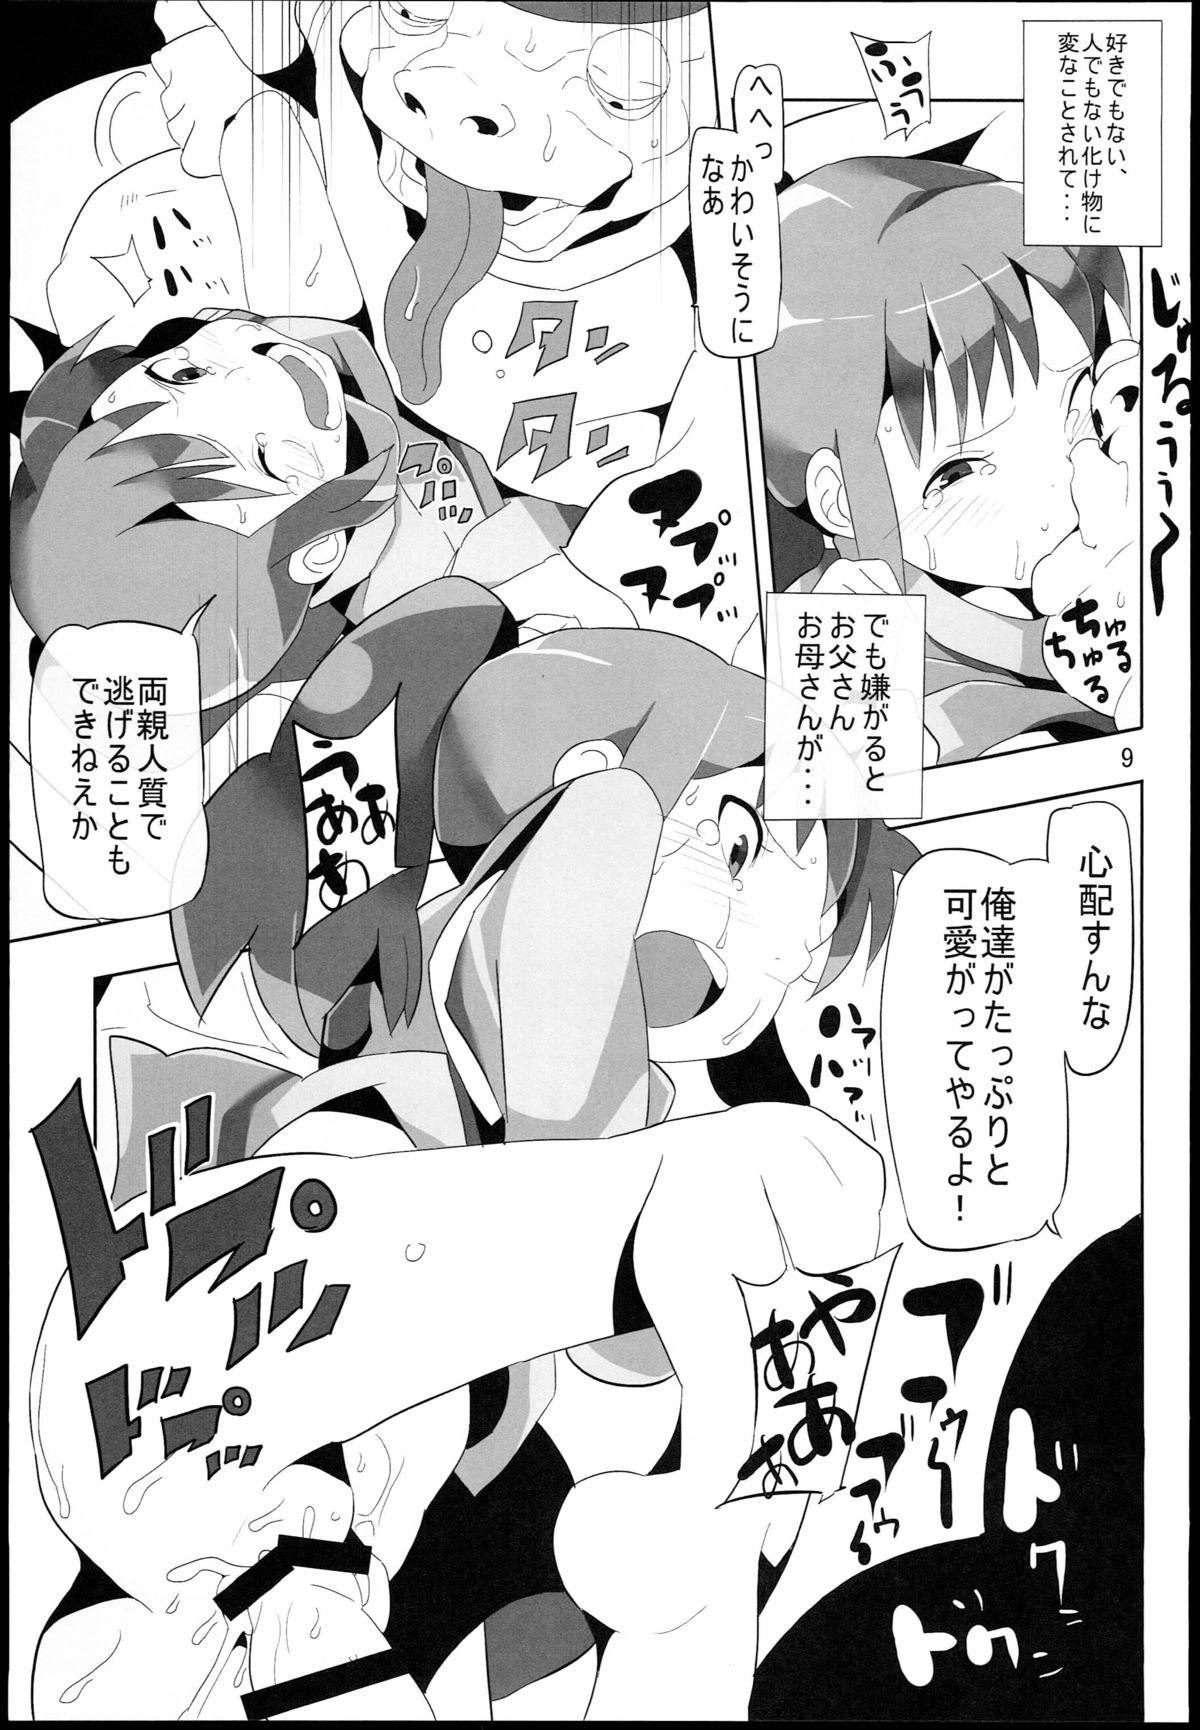  Sen to Chihiro to Ryoujoku no Yu-ya Isyukan Jigoku no Hibi - Spirited away Infiel - Page 9